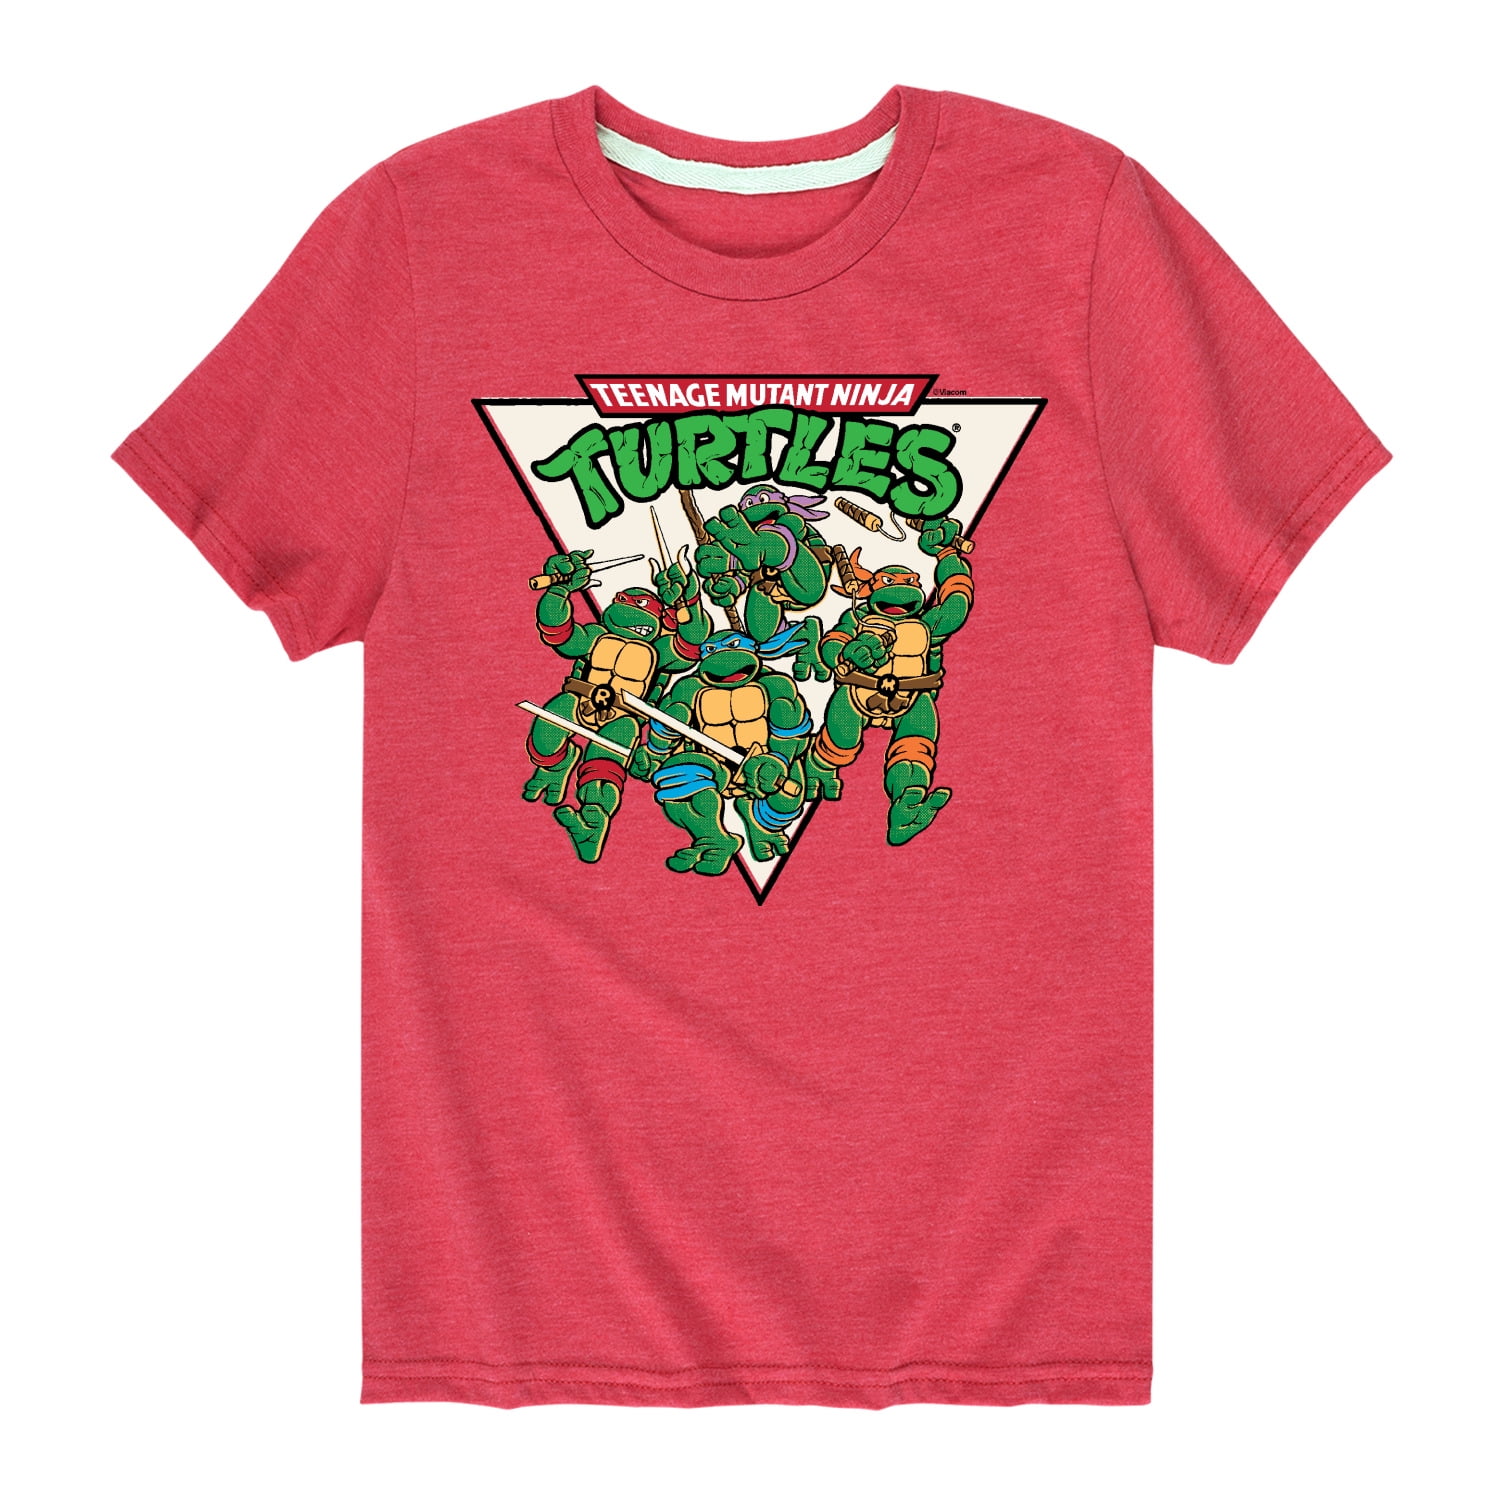 Teenage Mutant Ninja Turtles TMNT to The Rescue! Original Vintage T-Shirt